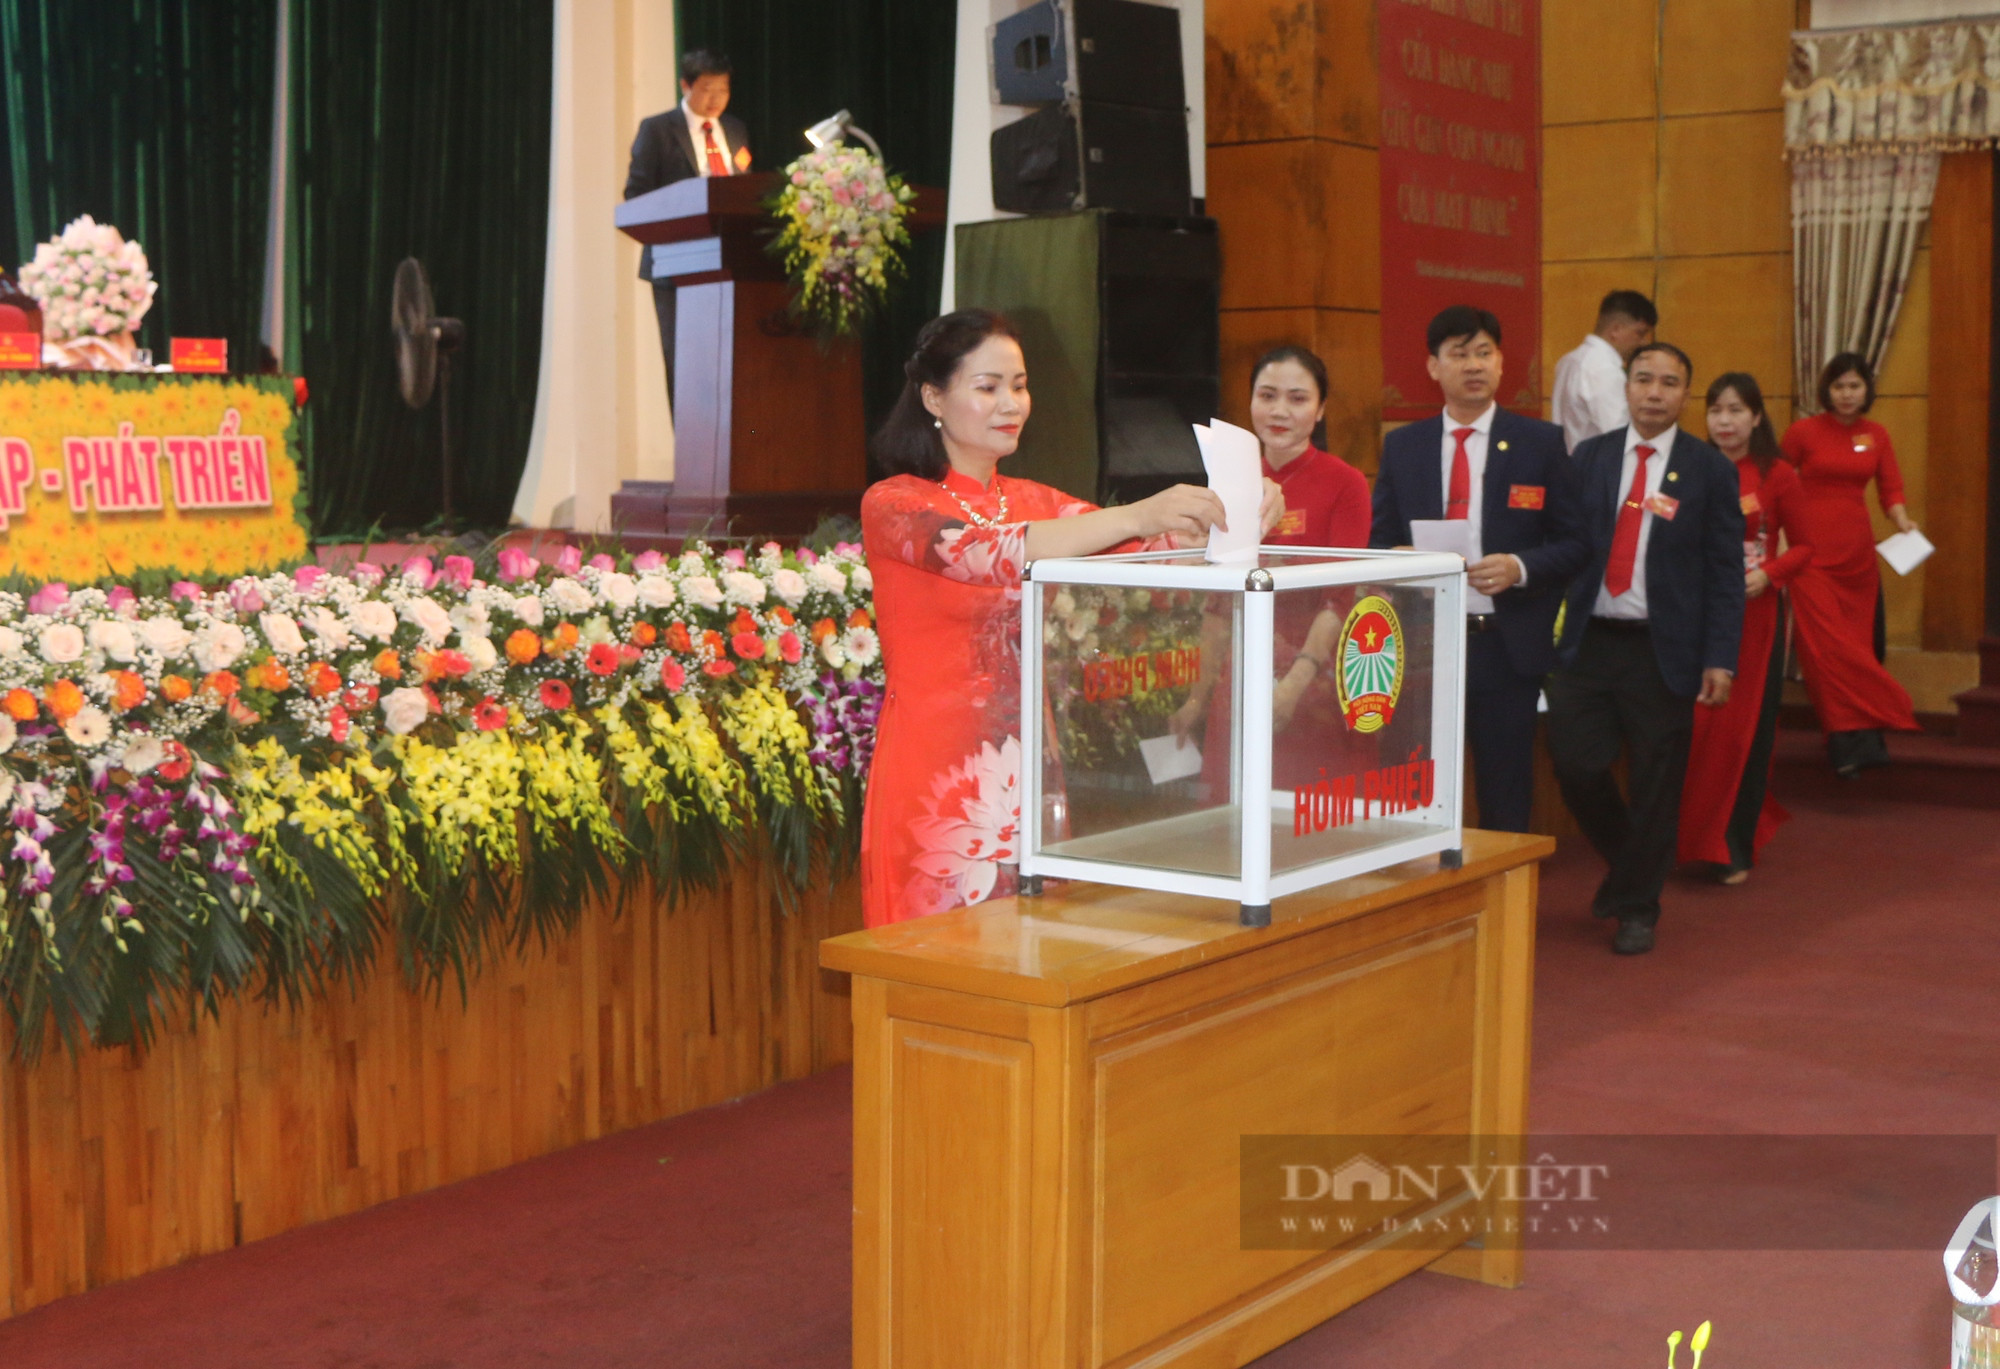 Hưng Yên: Đại hội Hội Nông dân huyện Văn Lâm bầu 18 đồng chí tham gia Ban Chấp hành - Ảnh 1.